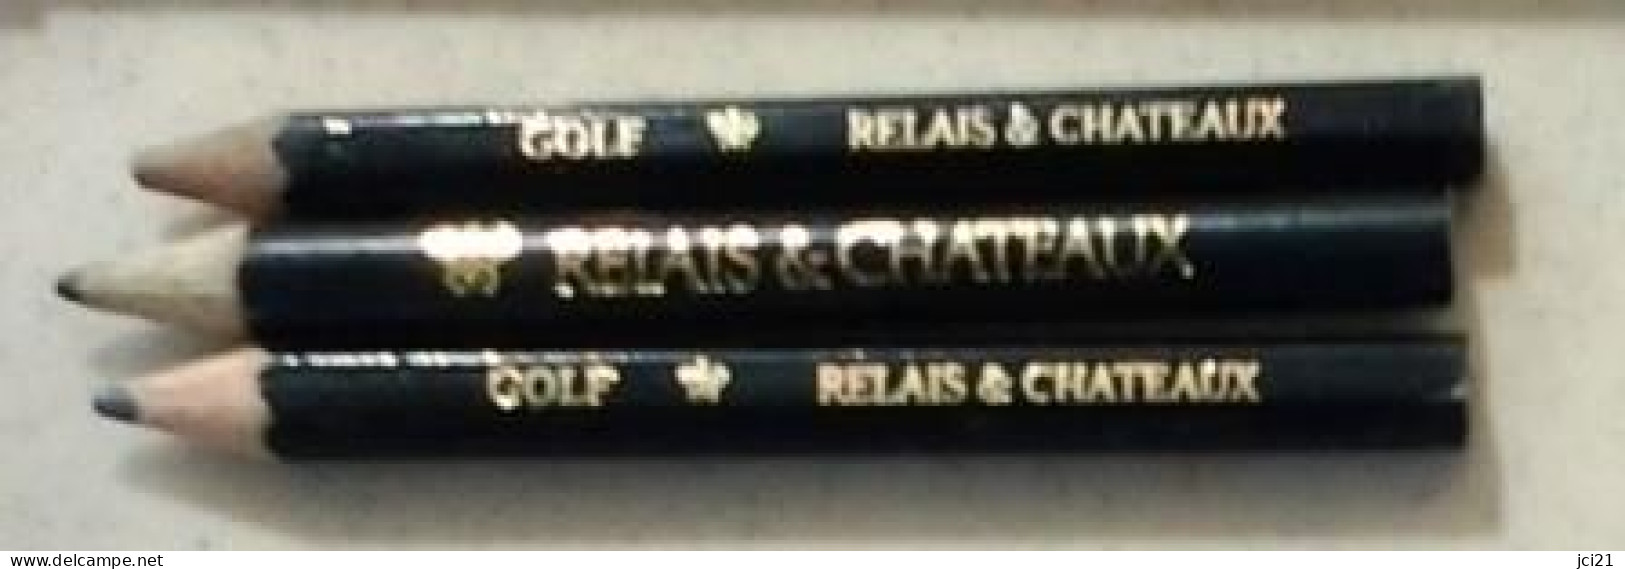 Lot De 3 Crayons " RELAIS & CHATEAUX Et GOLF RELAIS & CHATEAUX " (Bte Stylo) _Di397 - Lapiceros